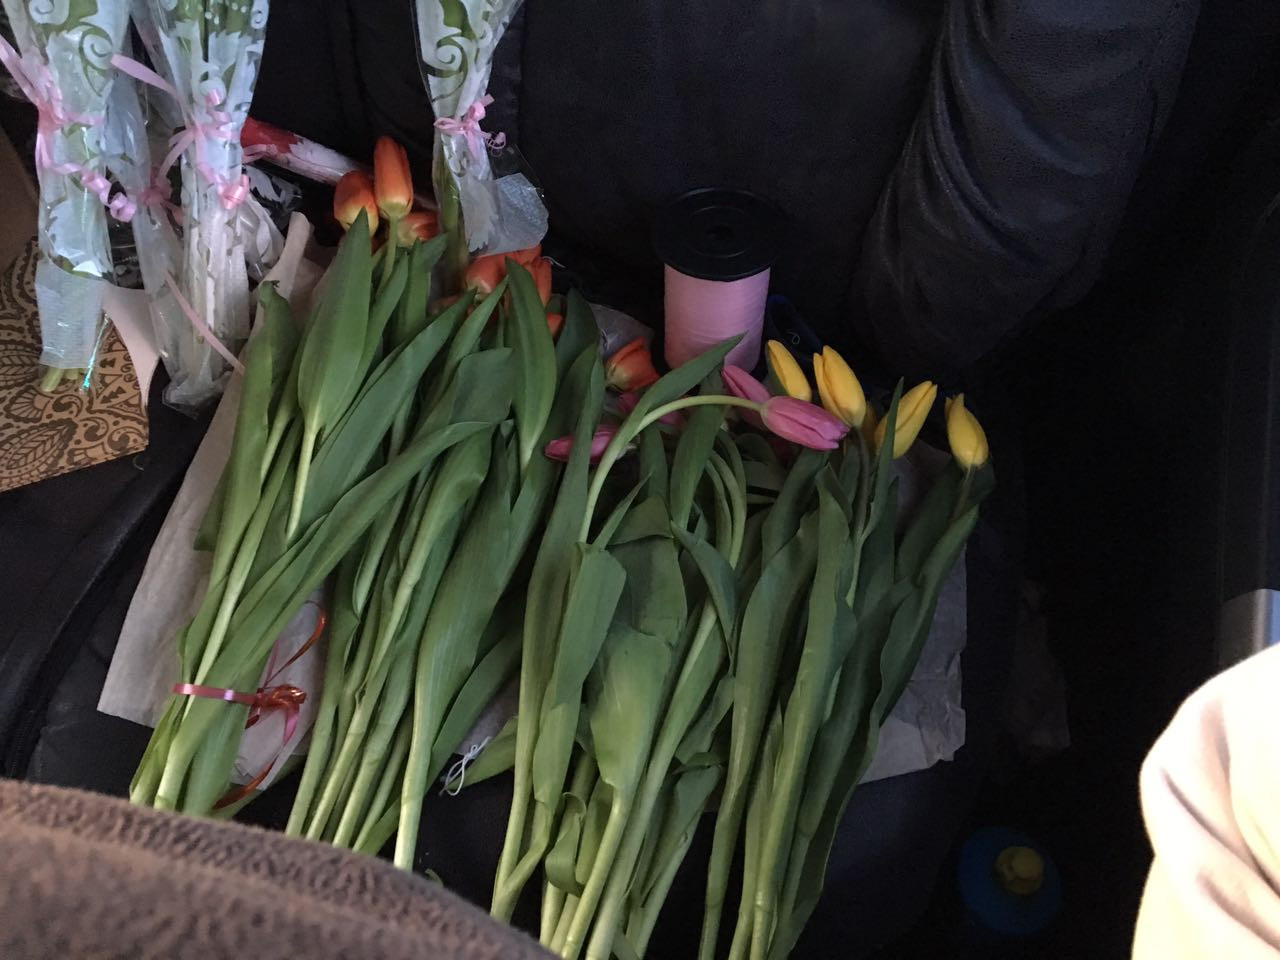 Купить тюльпаны в астрахани. Незаконная торговля тюльпанами. Продажа тюльпанов. Тюльпаны на складе собраны. Продает тюльпаны лысый.